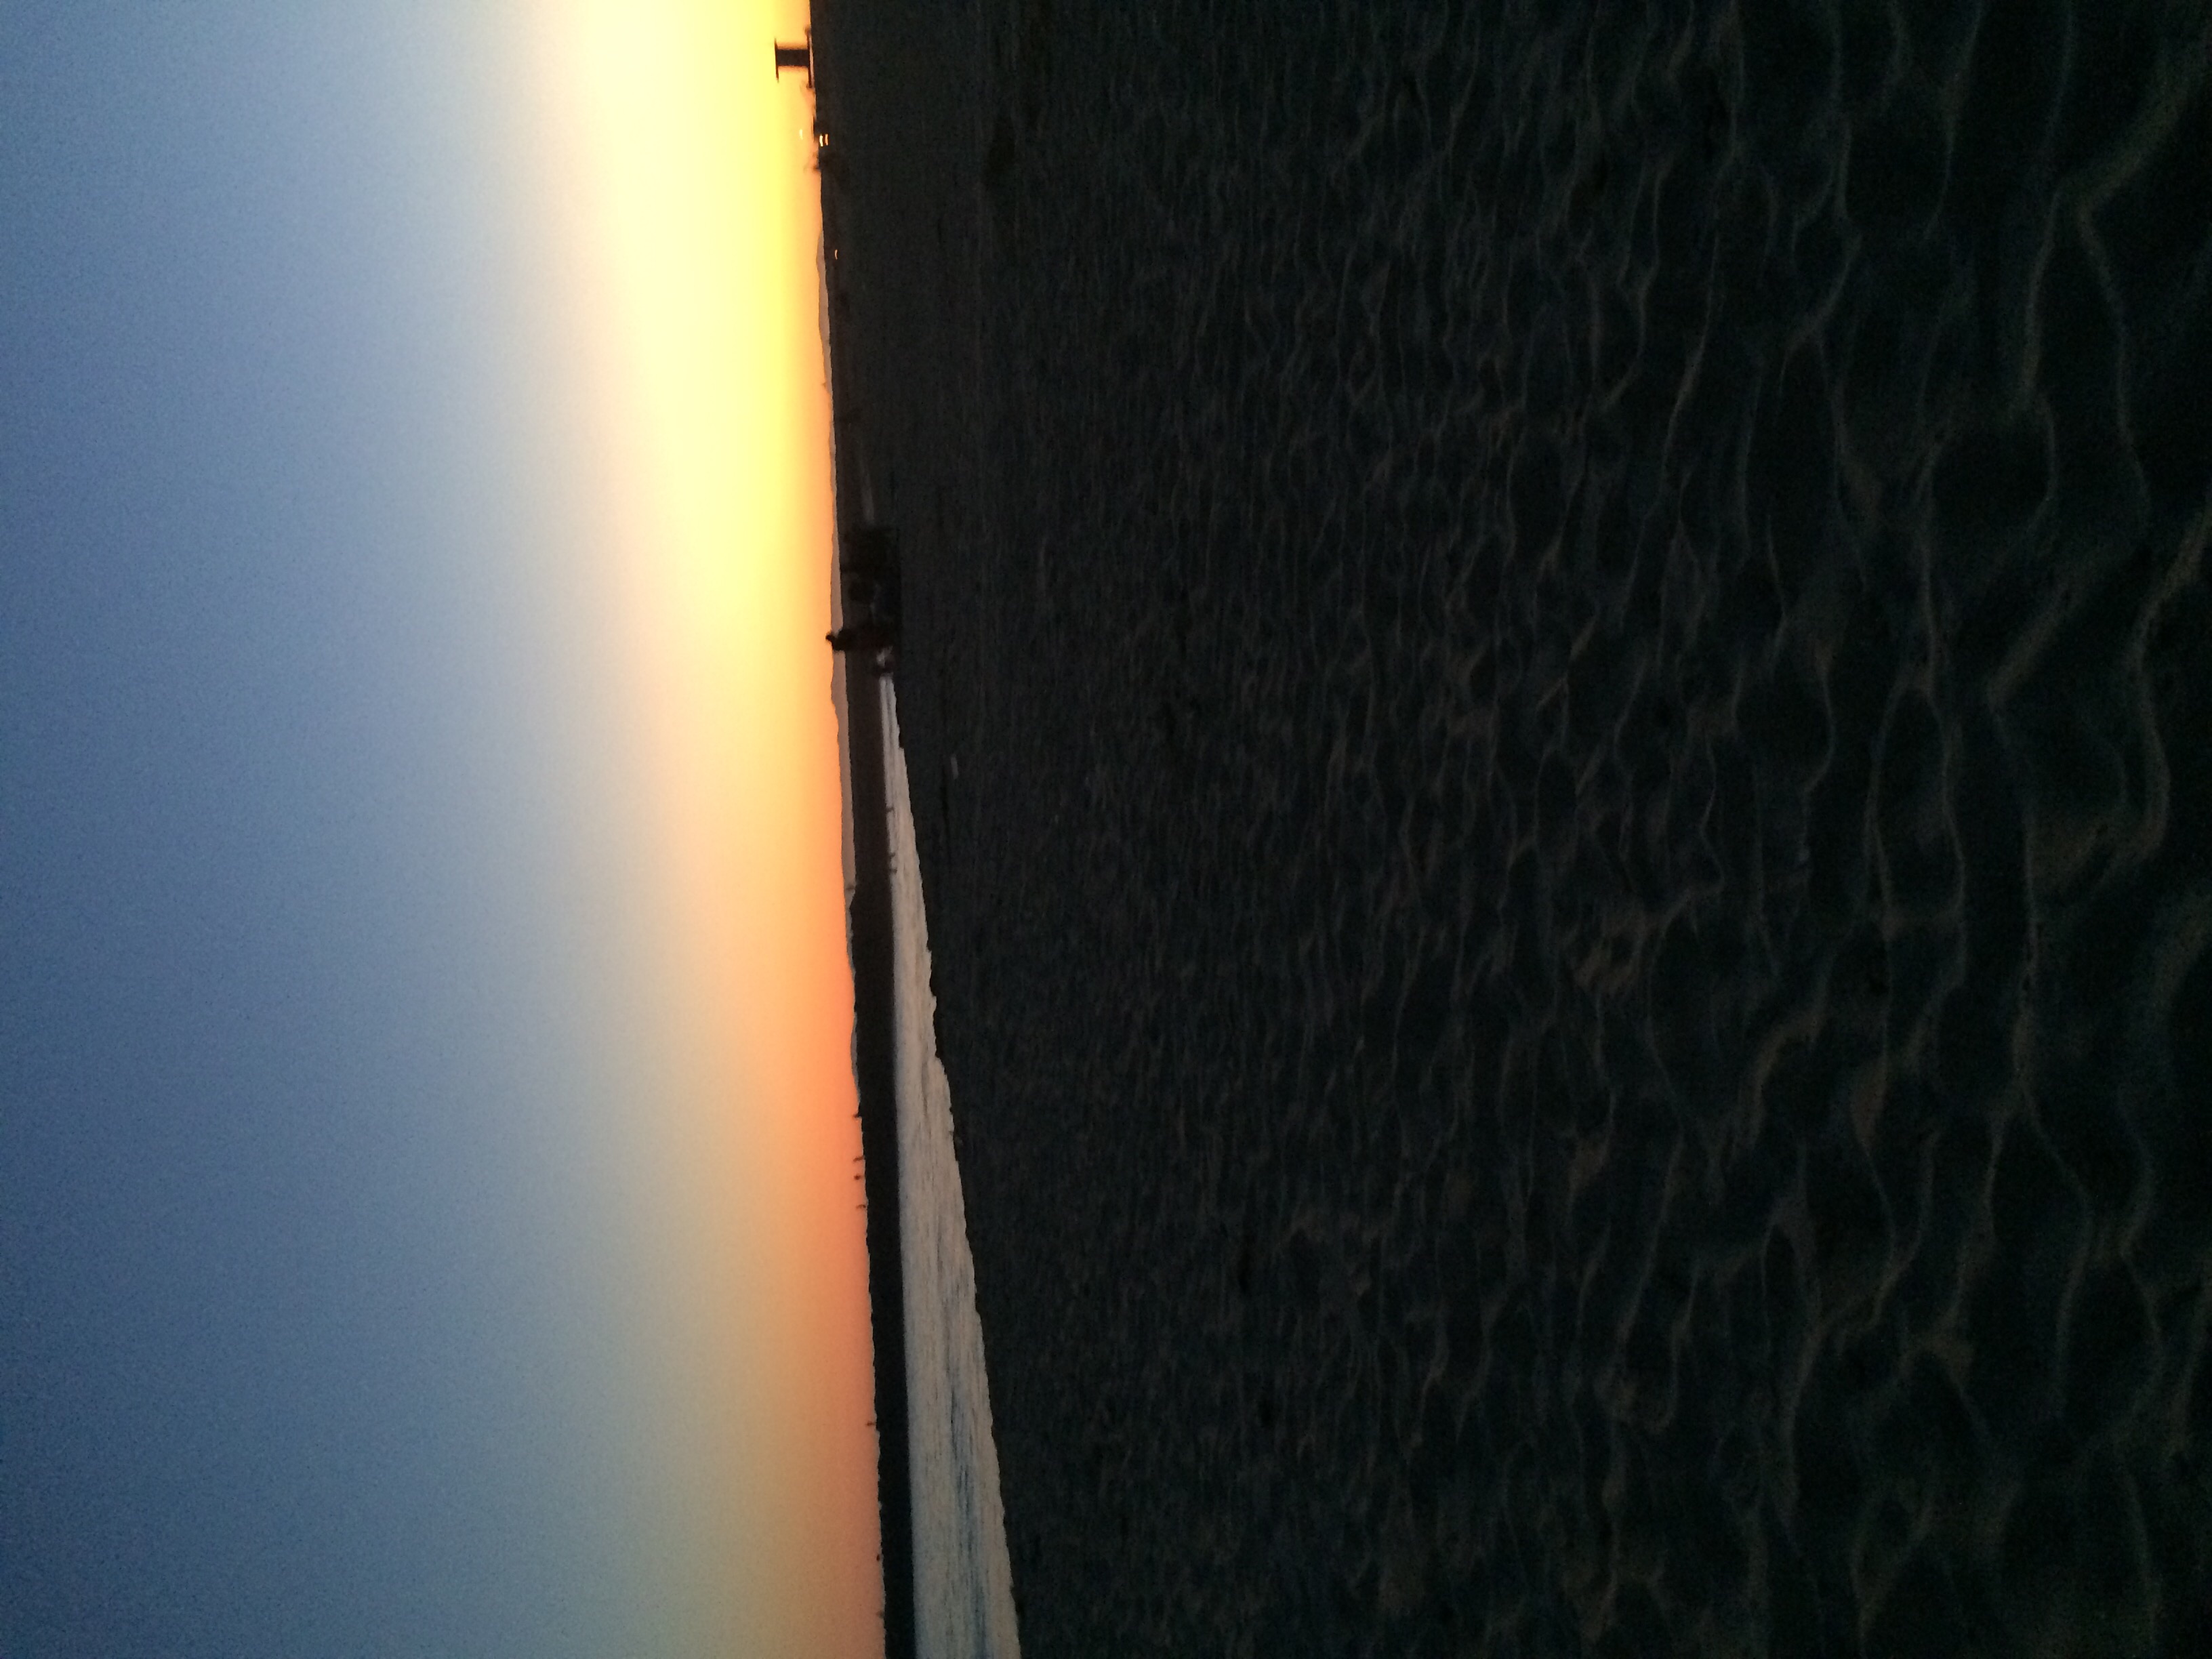  Sunset beach, pwani